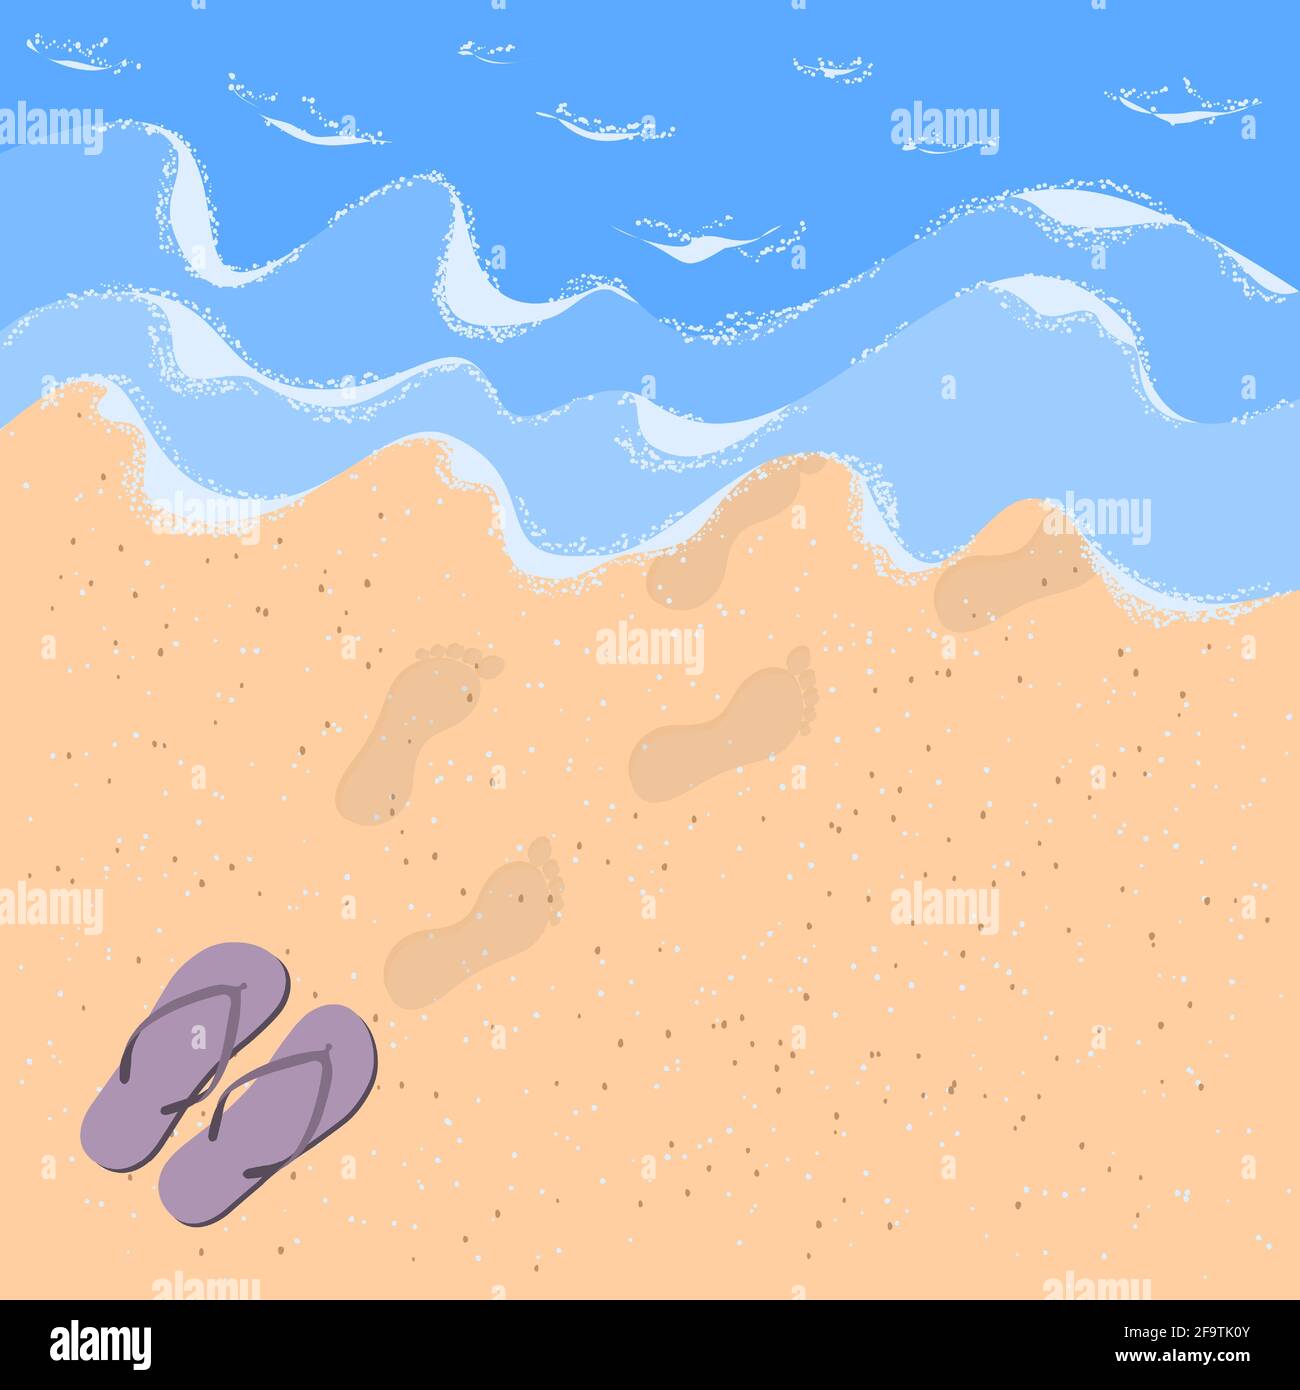 Flip Flops und Stufen auf dem Sand am Meer. Sandstrand mit Wellen, Meeresschaum und Flip Flops mit menschlichen Fußabdrücken im Sand.Sommerurlaub Konzept Stock Vektor